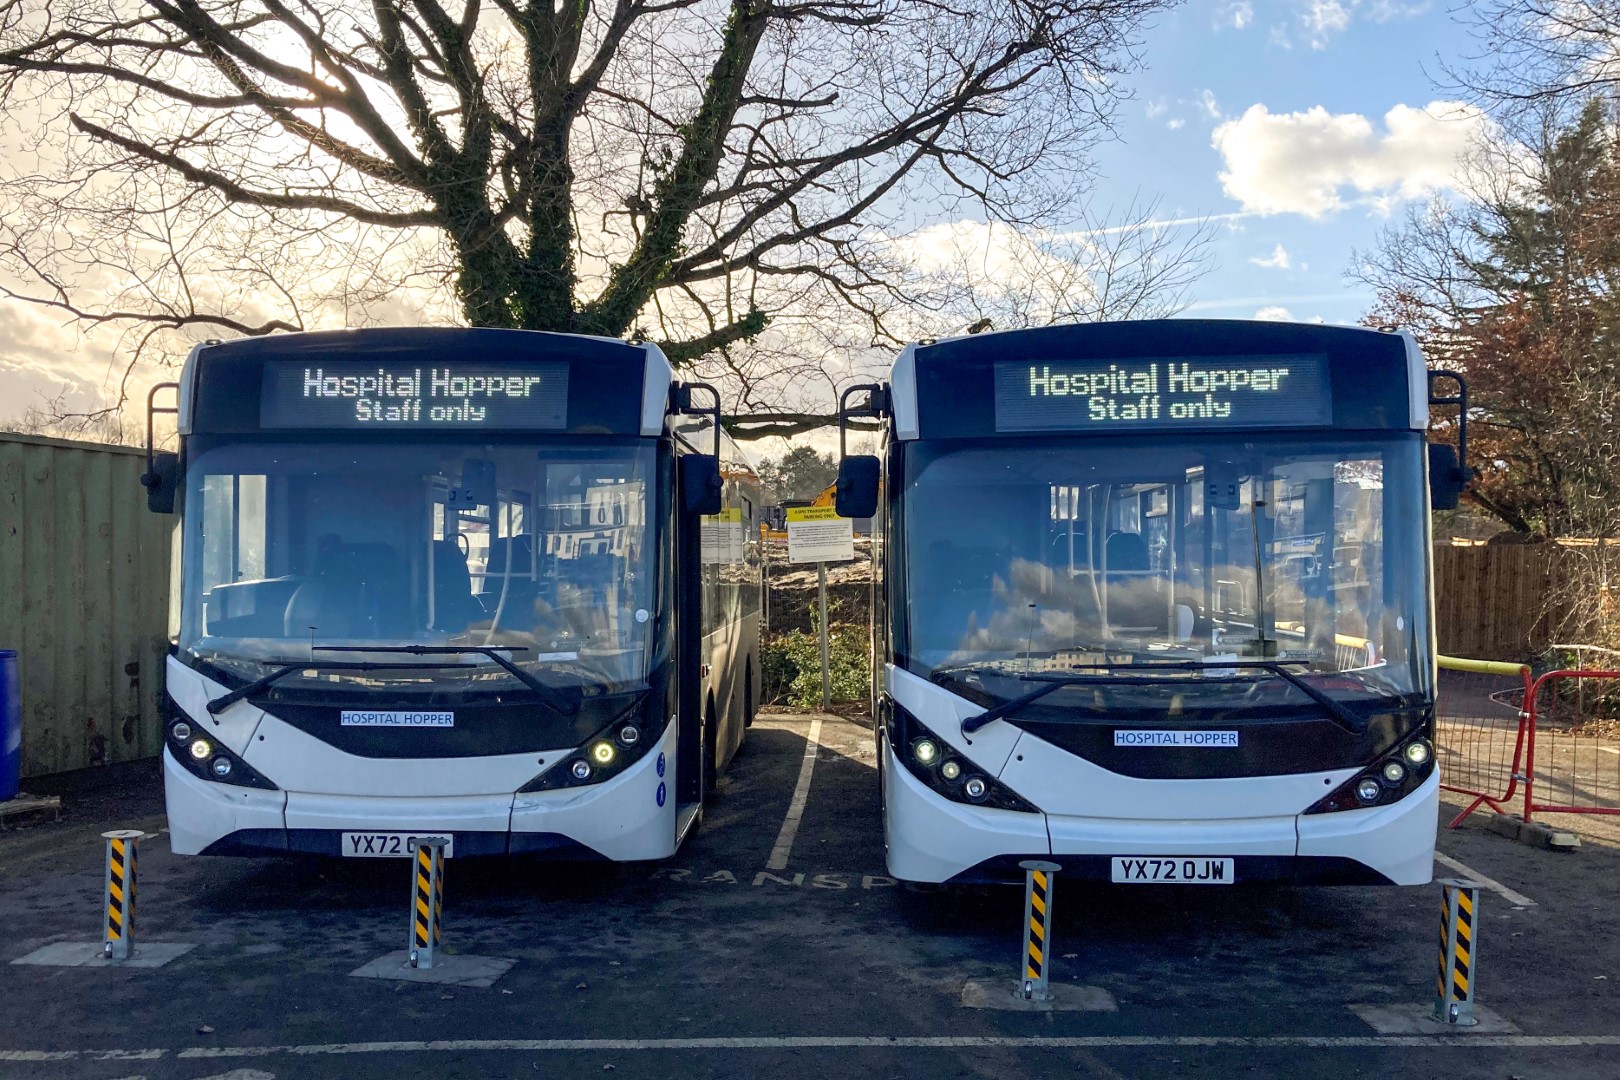 NHS buses on rental